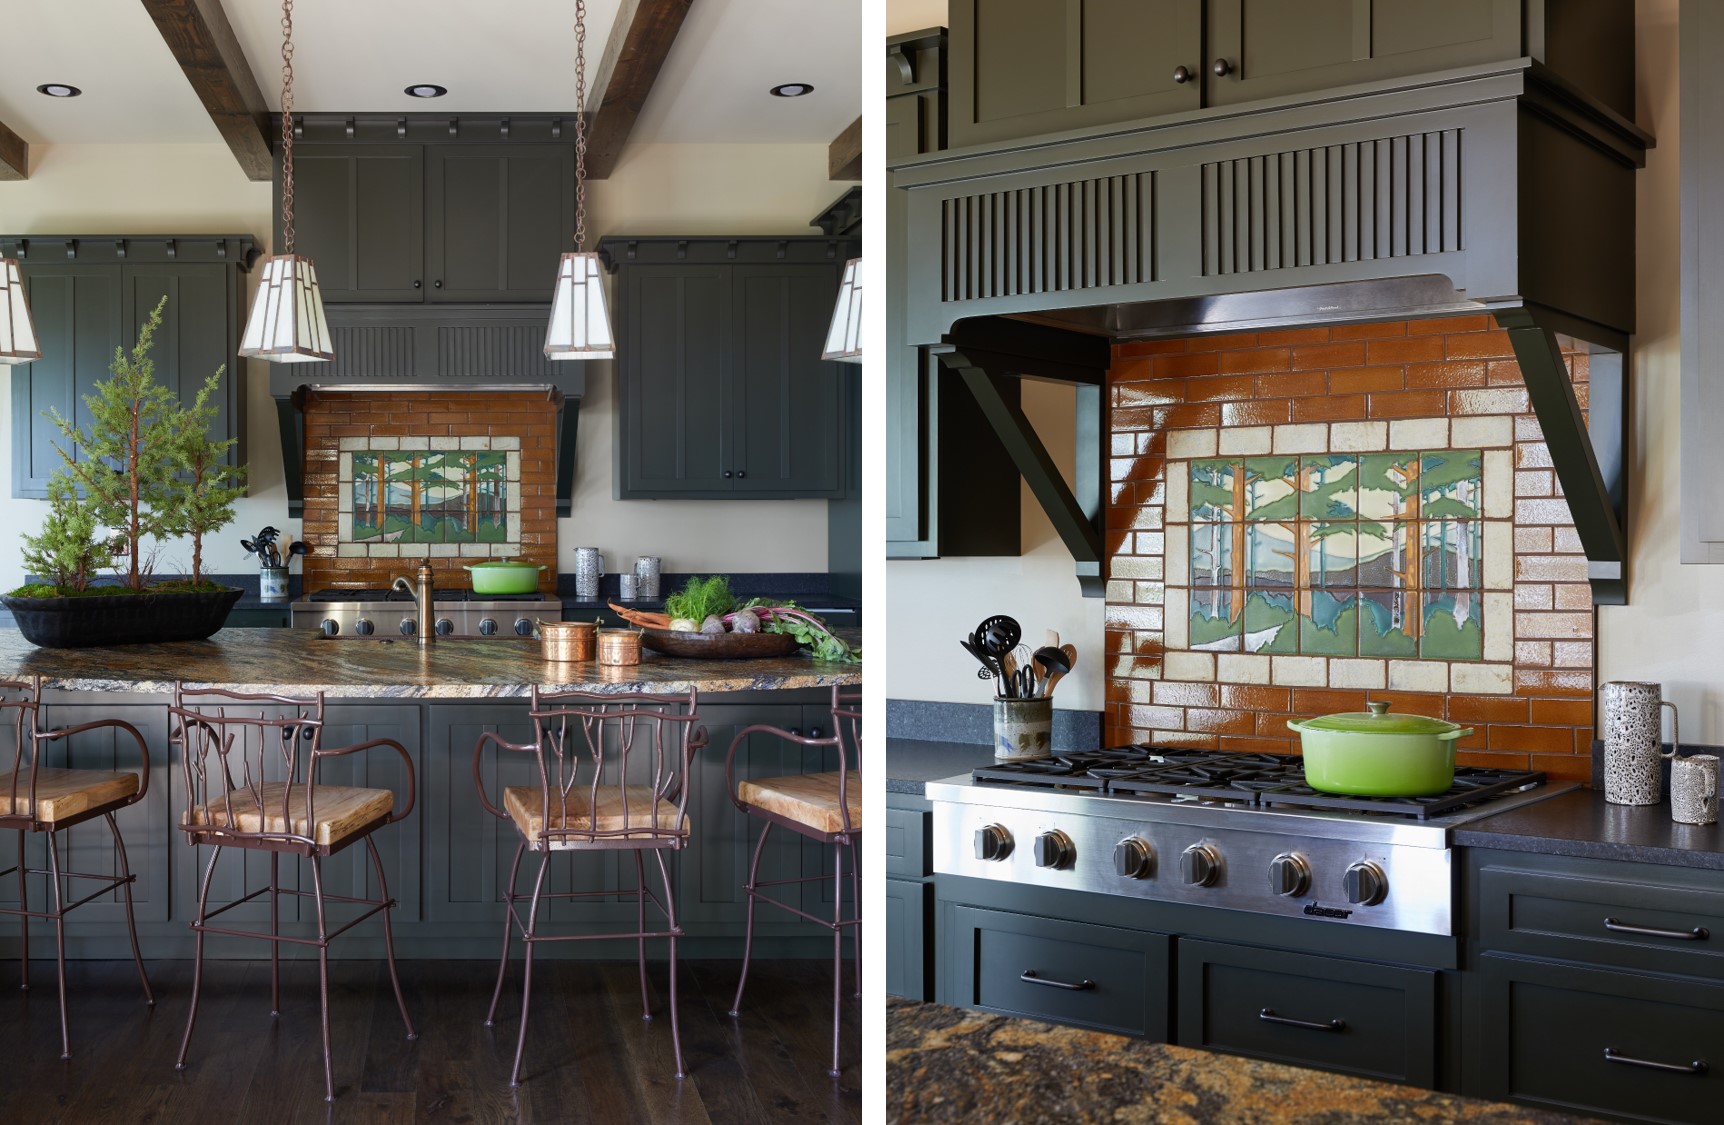 Cozy cabin kitchen. Dark green kitchen cabinets. Big gas stove.